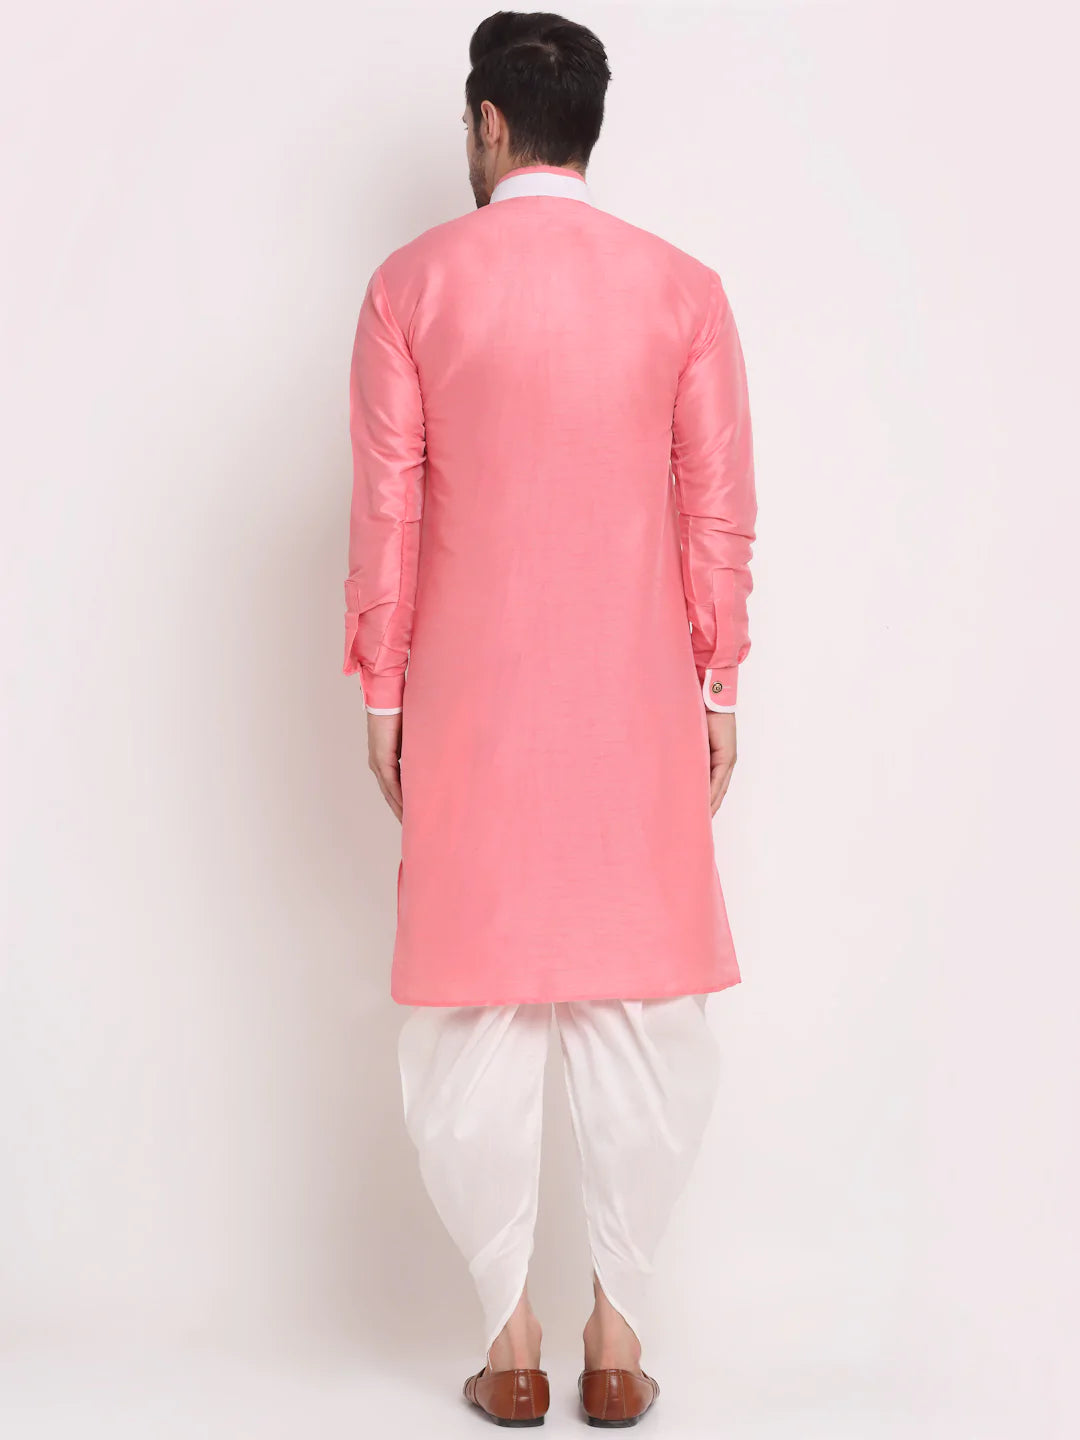 Kalyum Men's Pink Solid Kurta with White Dhoti Pant - Distacart